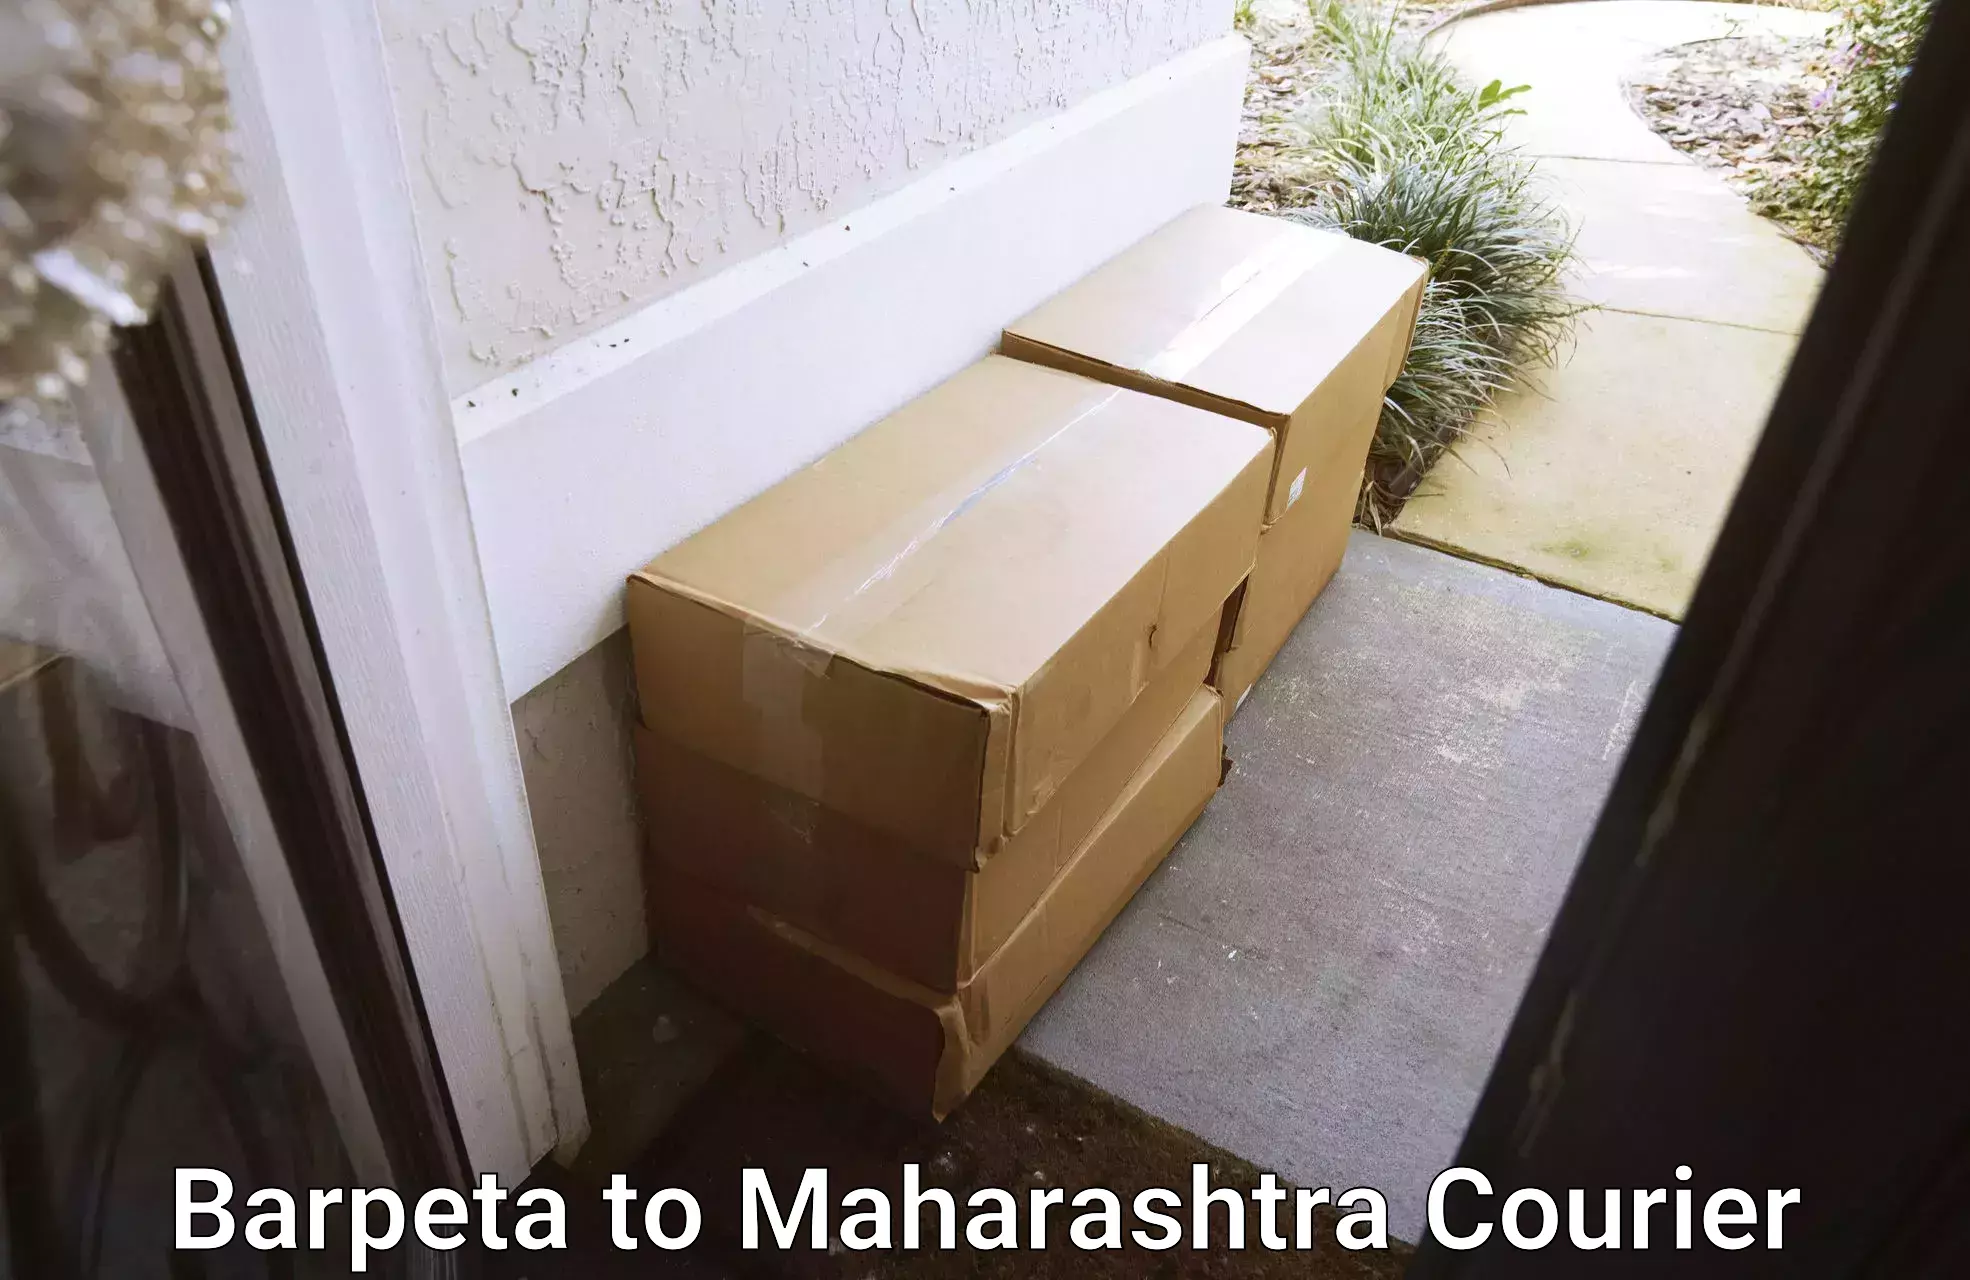 Delivery service partnership Barpeta to Maharashtra